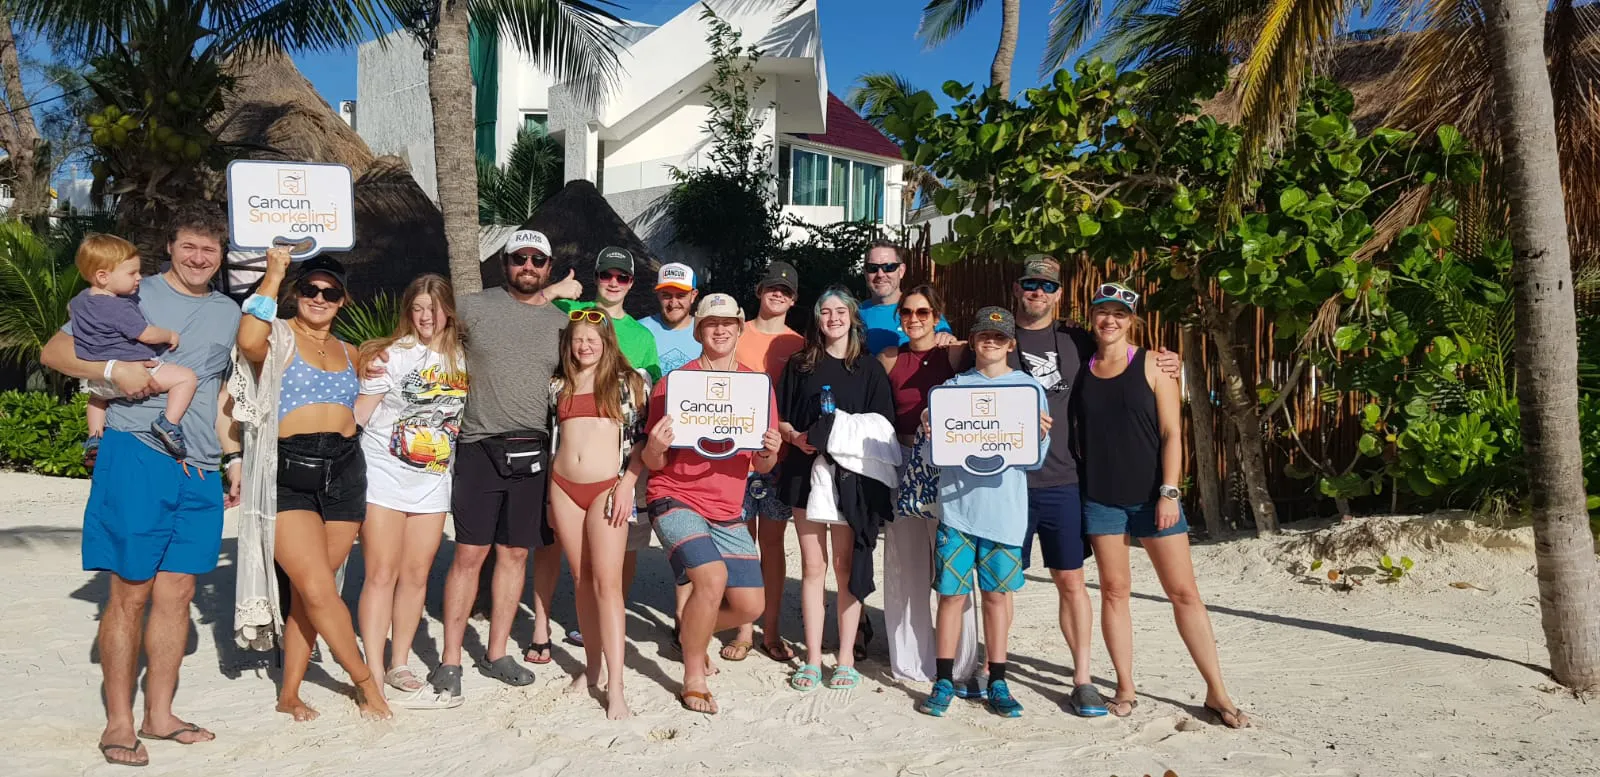 Una familia de once adultos, cuatro adolecentes y un niño listos en la playa | Cancun Snorkeling